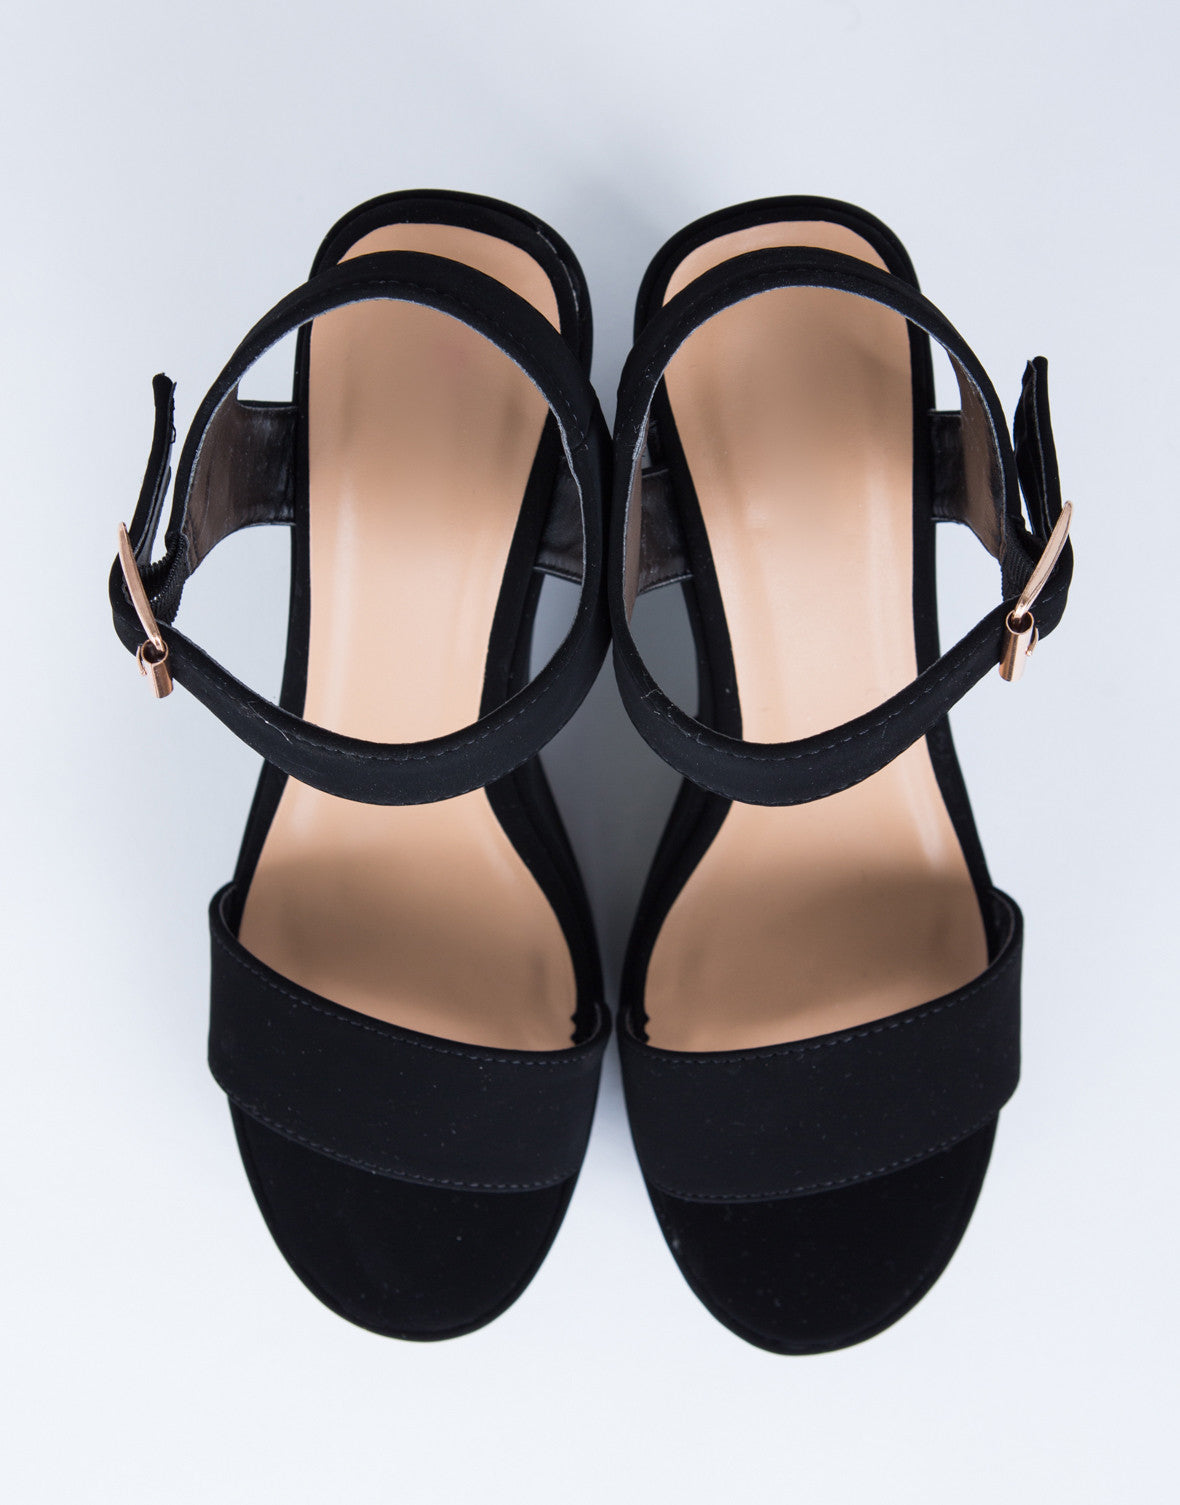 Chunky Platform Heels - Black Ankle Strapped Heels - Platform Sandals ...